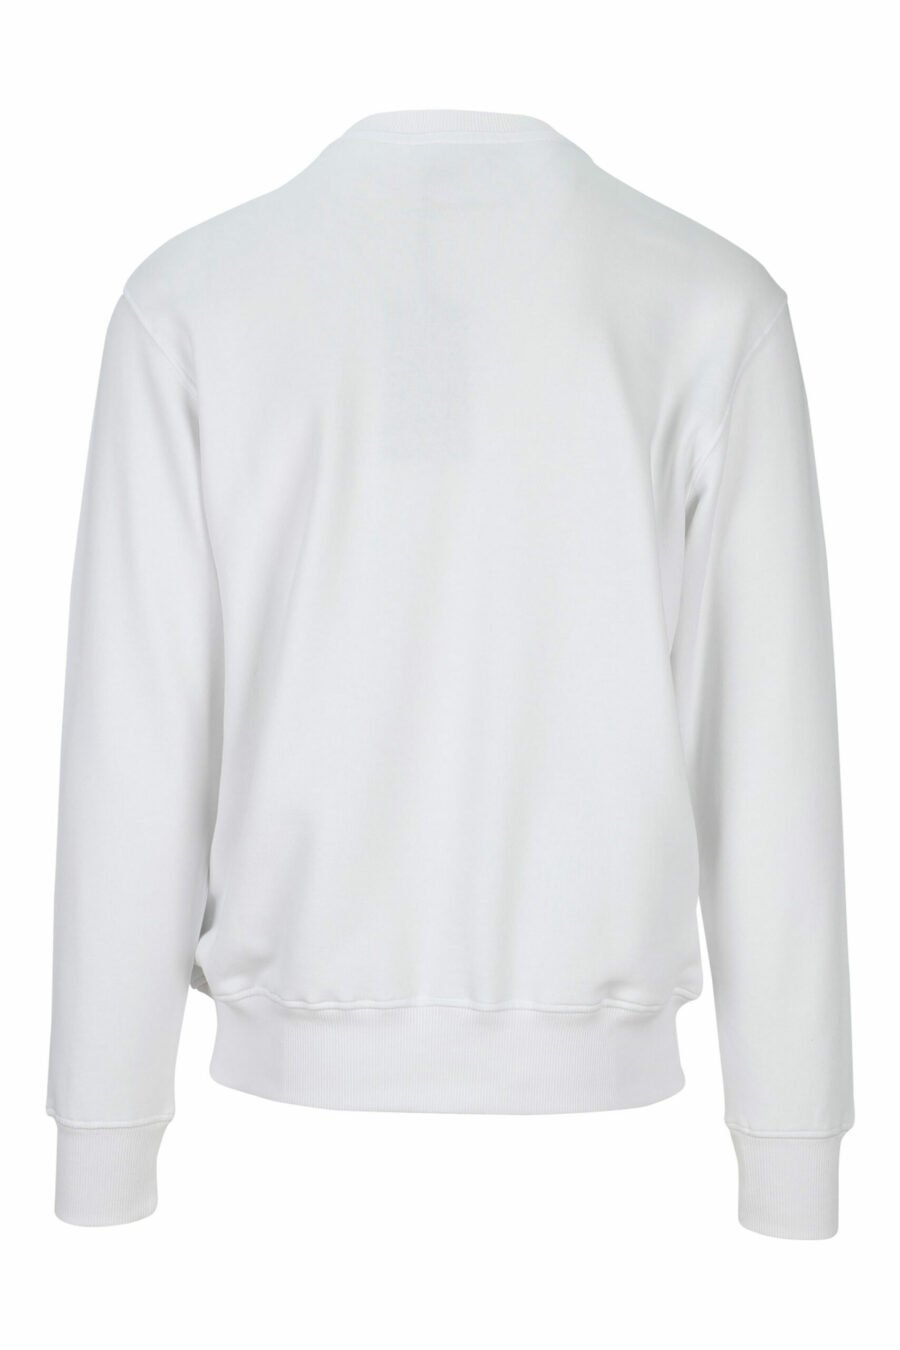 Weißes Sweatshirt mit "spry" Grafik maxilogo - 8052019469769 1 skaliert